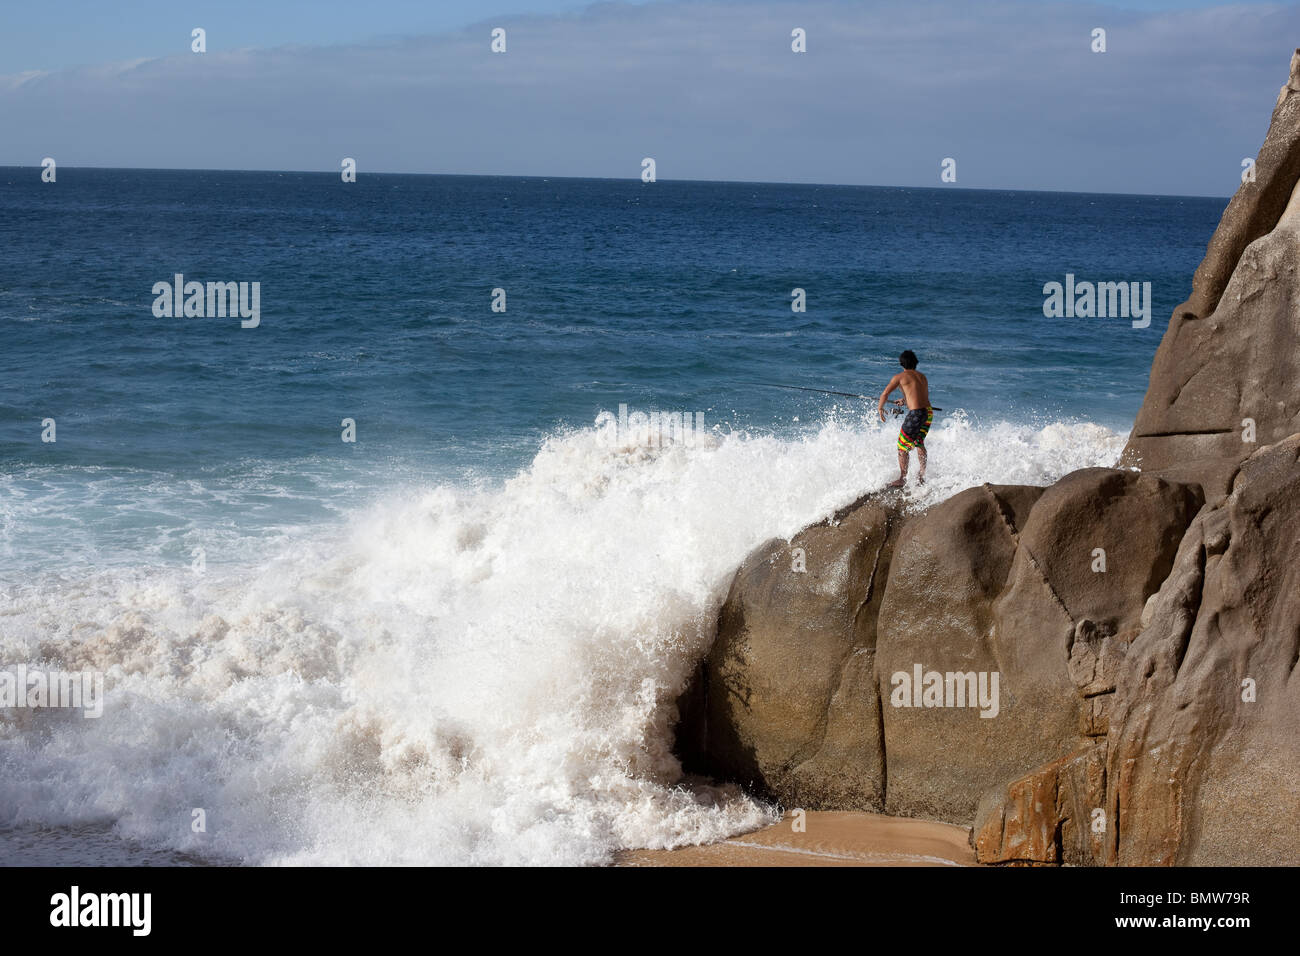 La pêche au large de l'homme des rochers avec de grosses vagues en danger, situation gênante Banque D'Images